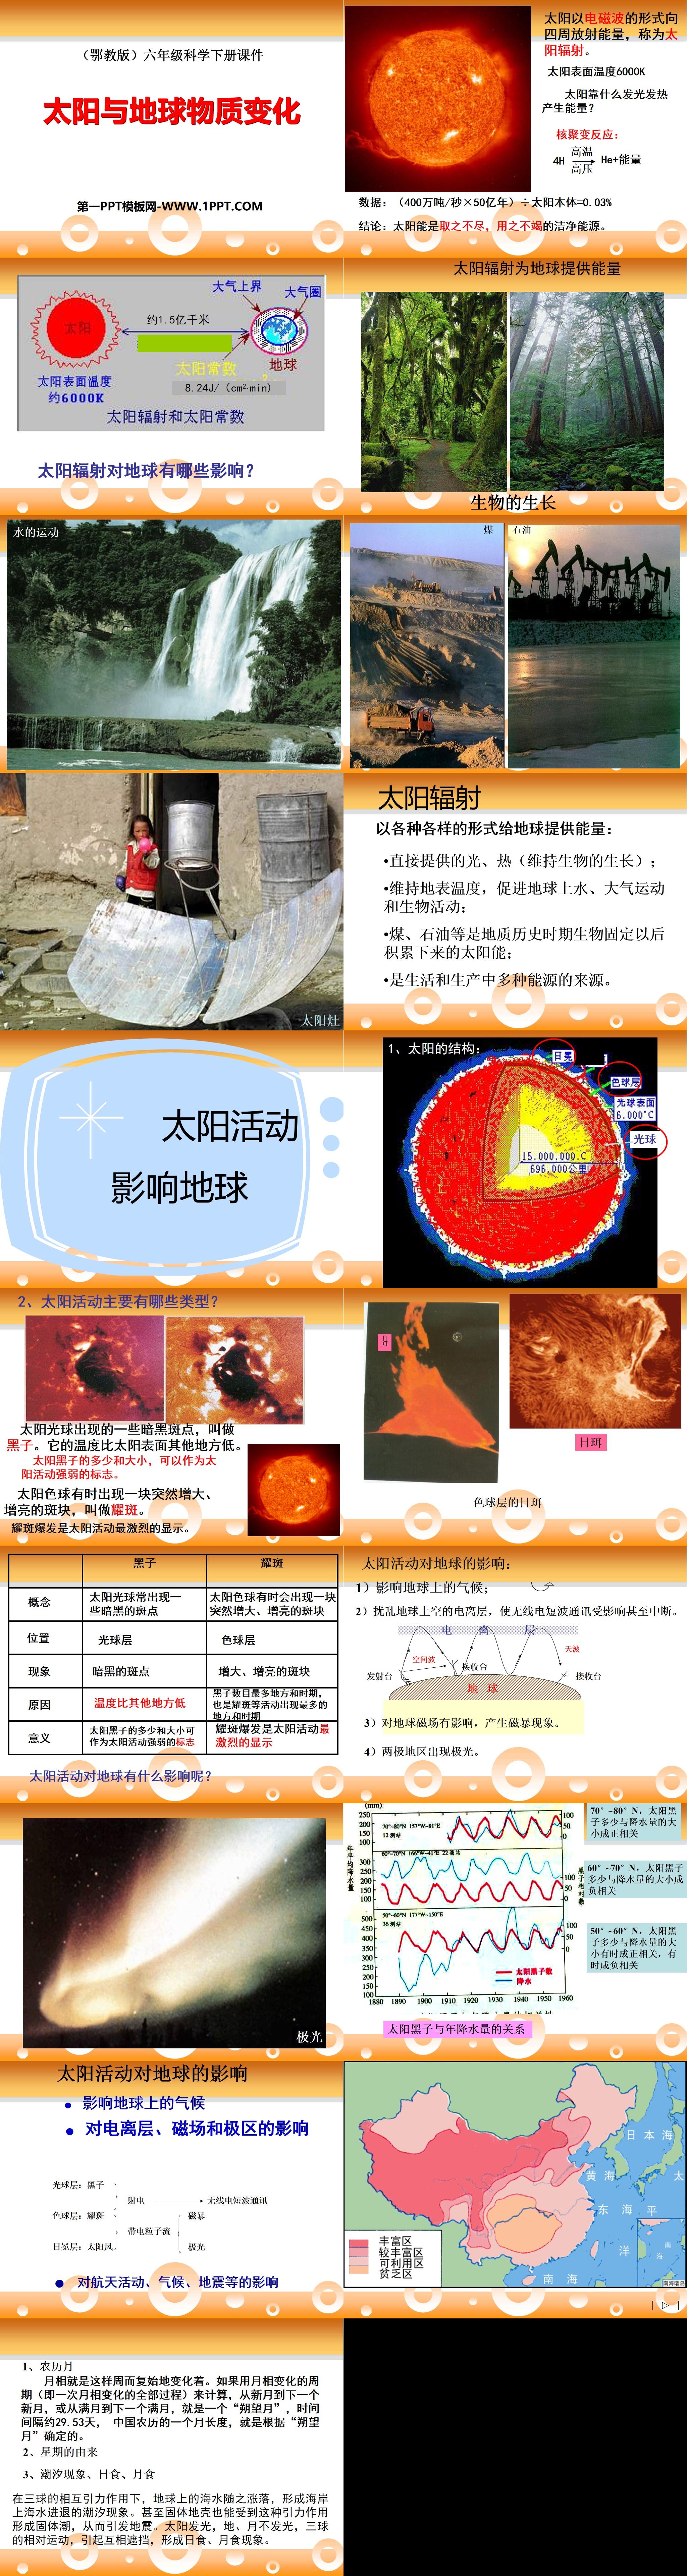 《太阳与地球物质变化》PPT课件
（2）